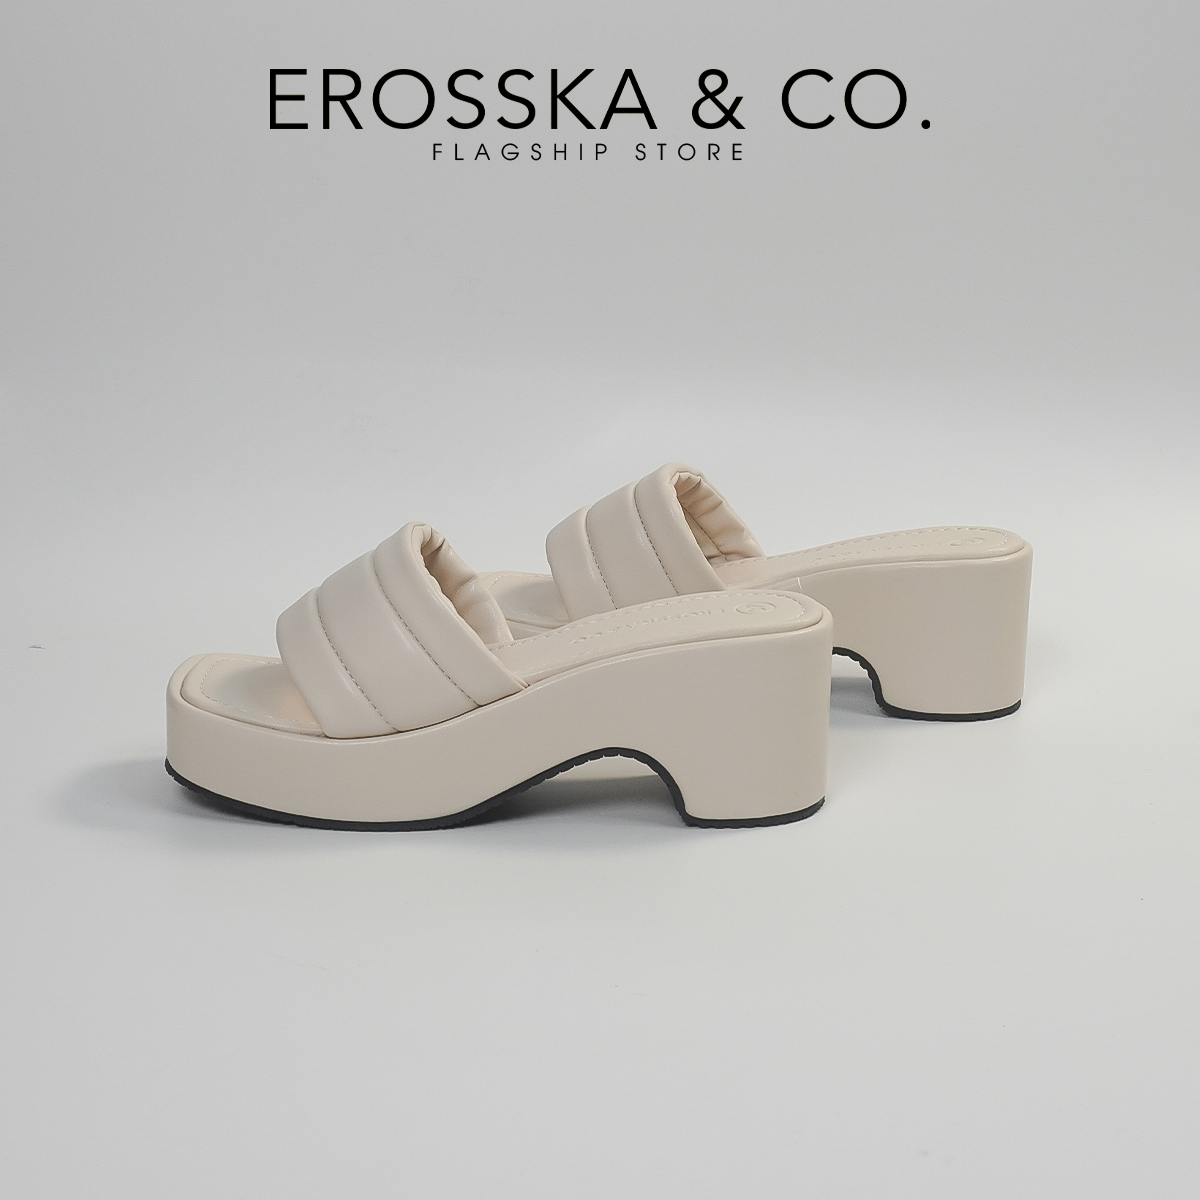 Erosska - Dép nữ thời trang quai ngang đế xuồng trẻ trung cao 7cm màu nude - SB023